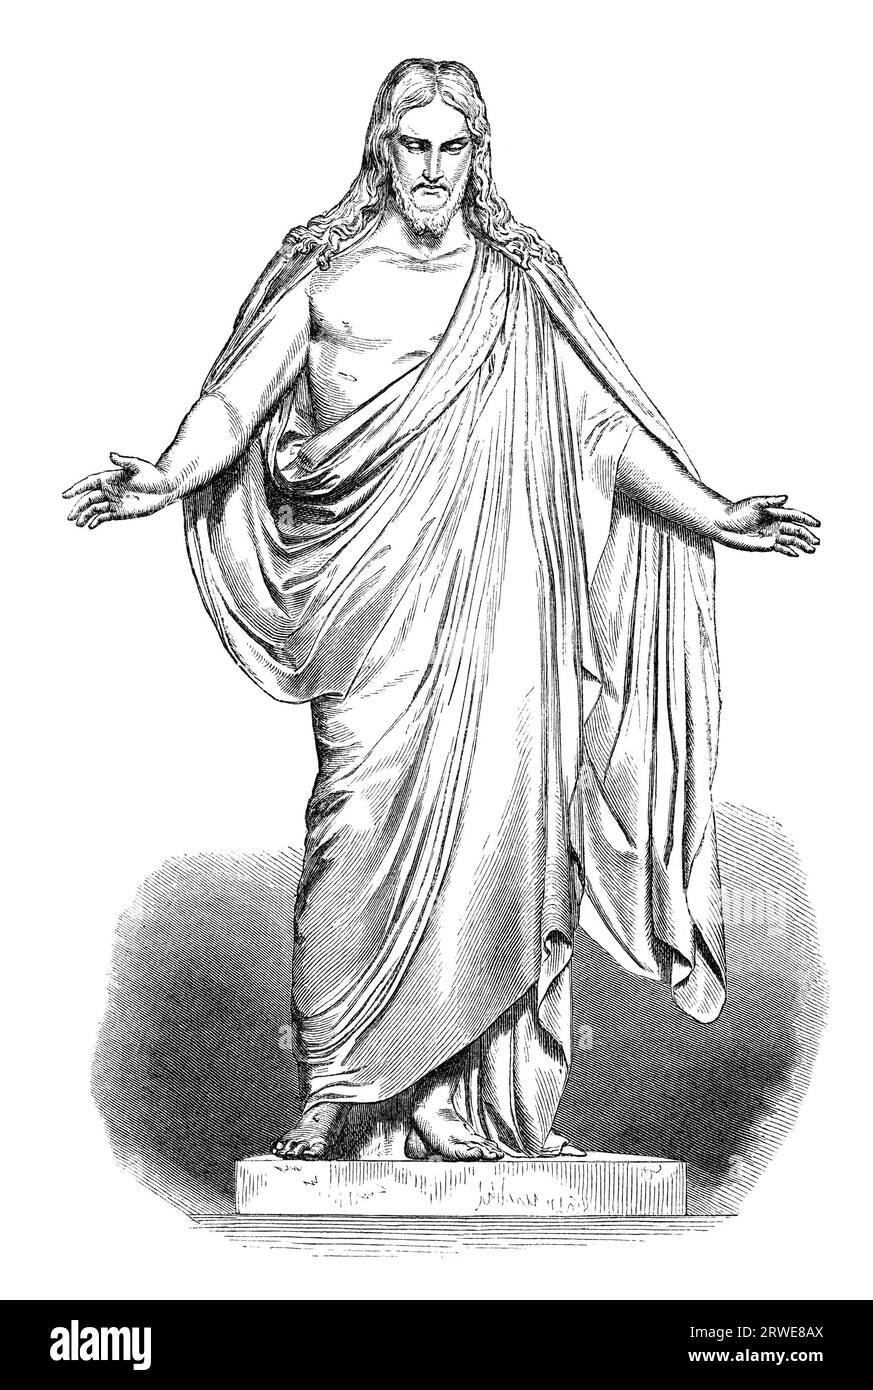 Illustrazione di Gesù basata sulla statua di Thorvaldsens Christus. Fonte immagine: Scribners Magazine del 1870. a causa della sua età Foto Stock